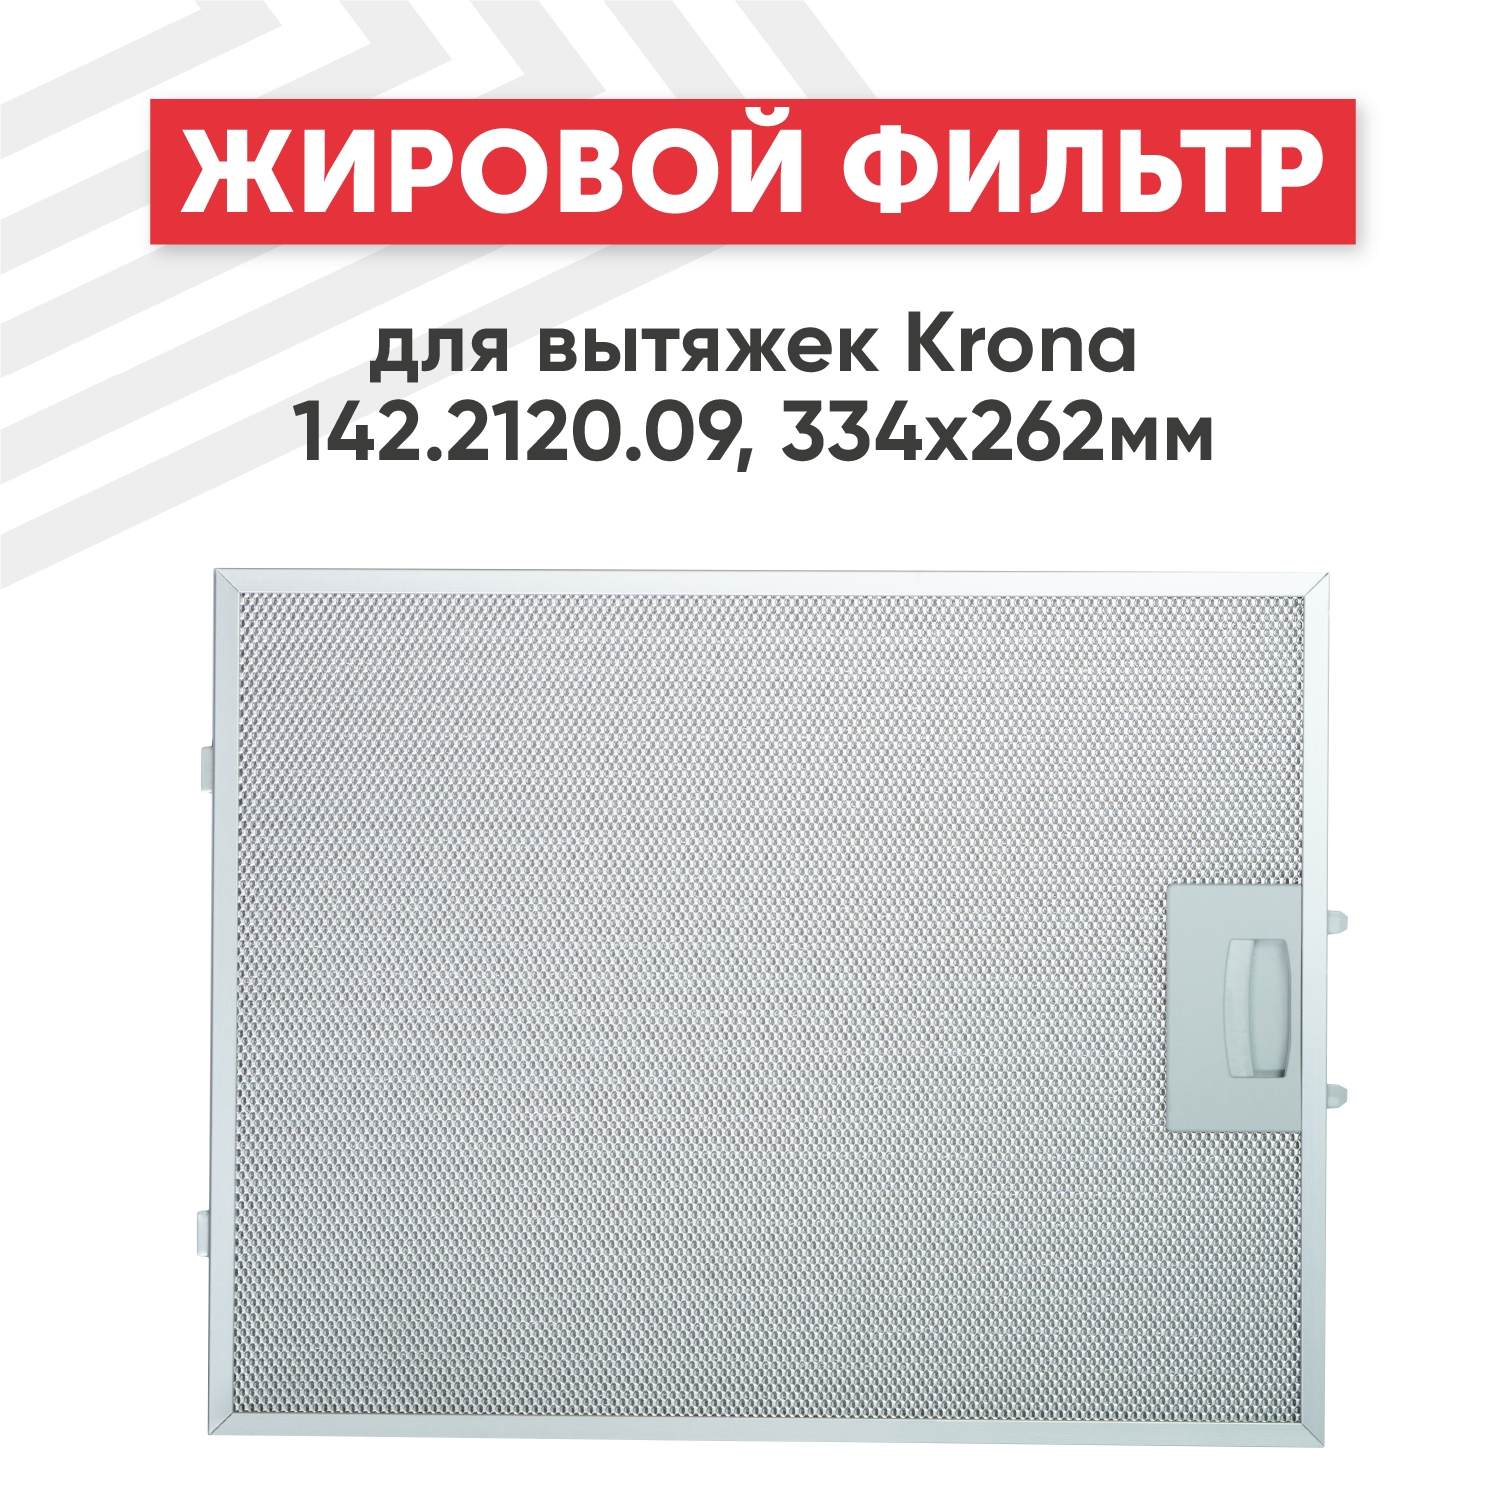 Жировой фильтр (кассета) алюминиевый (металлический) рамочный для вытяжек Krona 142.2120.09 многоразовый 334х262мм